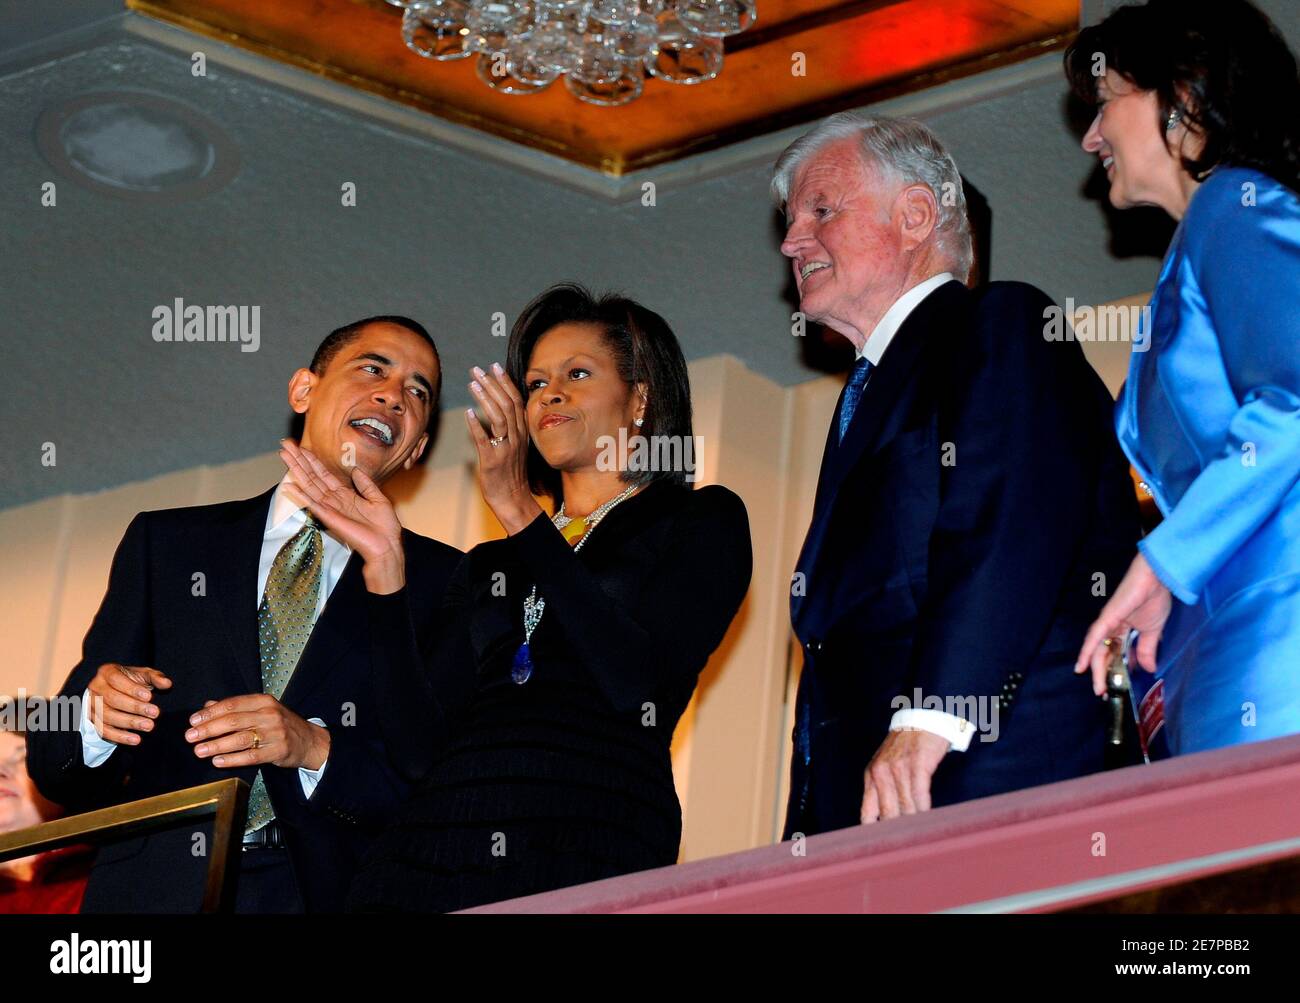 US-Präsident Barack Obama (L) und First Lady Michelle Obama beitreten Senator Ted Kennedy (D -MA) (2. R) und seine Frau Victoria (R) in eine musikalische Hommage an Kennedys Geburtstag feiern im Kennedy Center in Washington, 8. März 2009.  REUTERS/Mike Theiler (Vereinigte Staaten Politik) Stockfoto